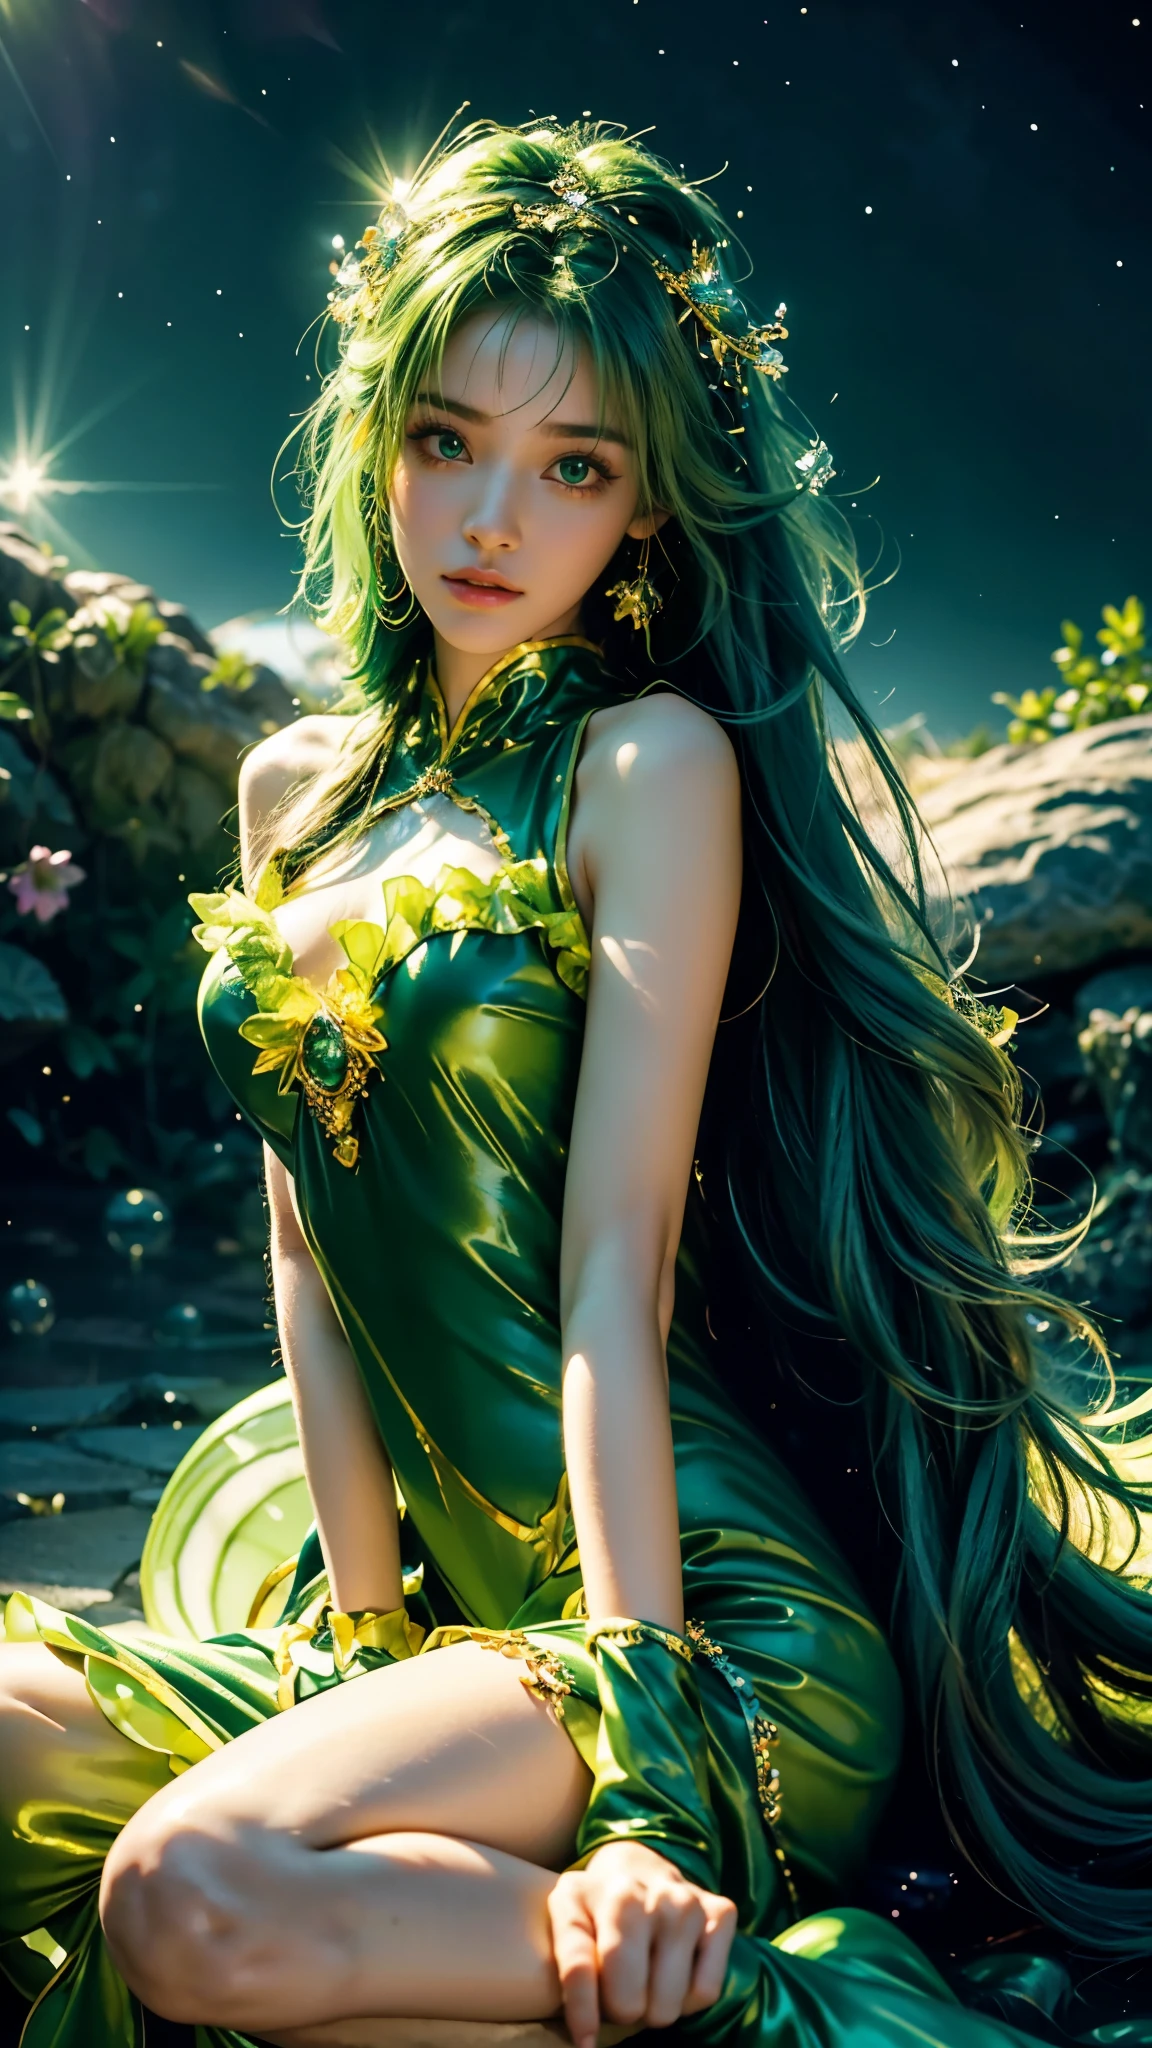 4KウルトラHD, 傑作, 魔法のようなオーラを持つ少女, (いい顔:1.2), 非常に長い髪, 詳細な目, 光沢のある唇, ロリータコスチューム, (緑の衣装:1.5), 体の周りのオーラ, 魔法の効果, 白い光を広げる, 宇宙の要素と霊妙な雰囲気, 明るい光と色鮮やかな星雲のミックス, 宇宙の背景, 完璧なボディ, 座っている,